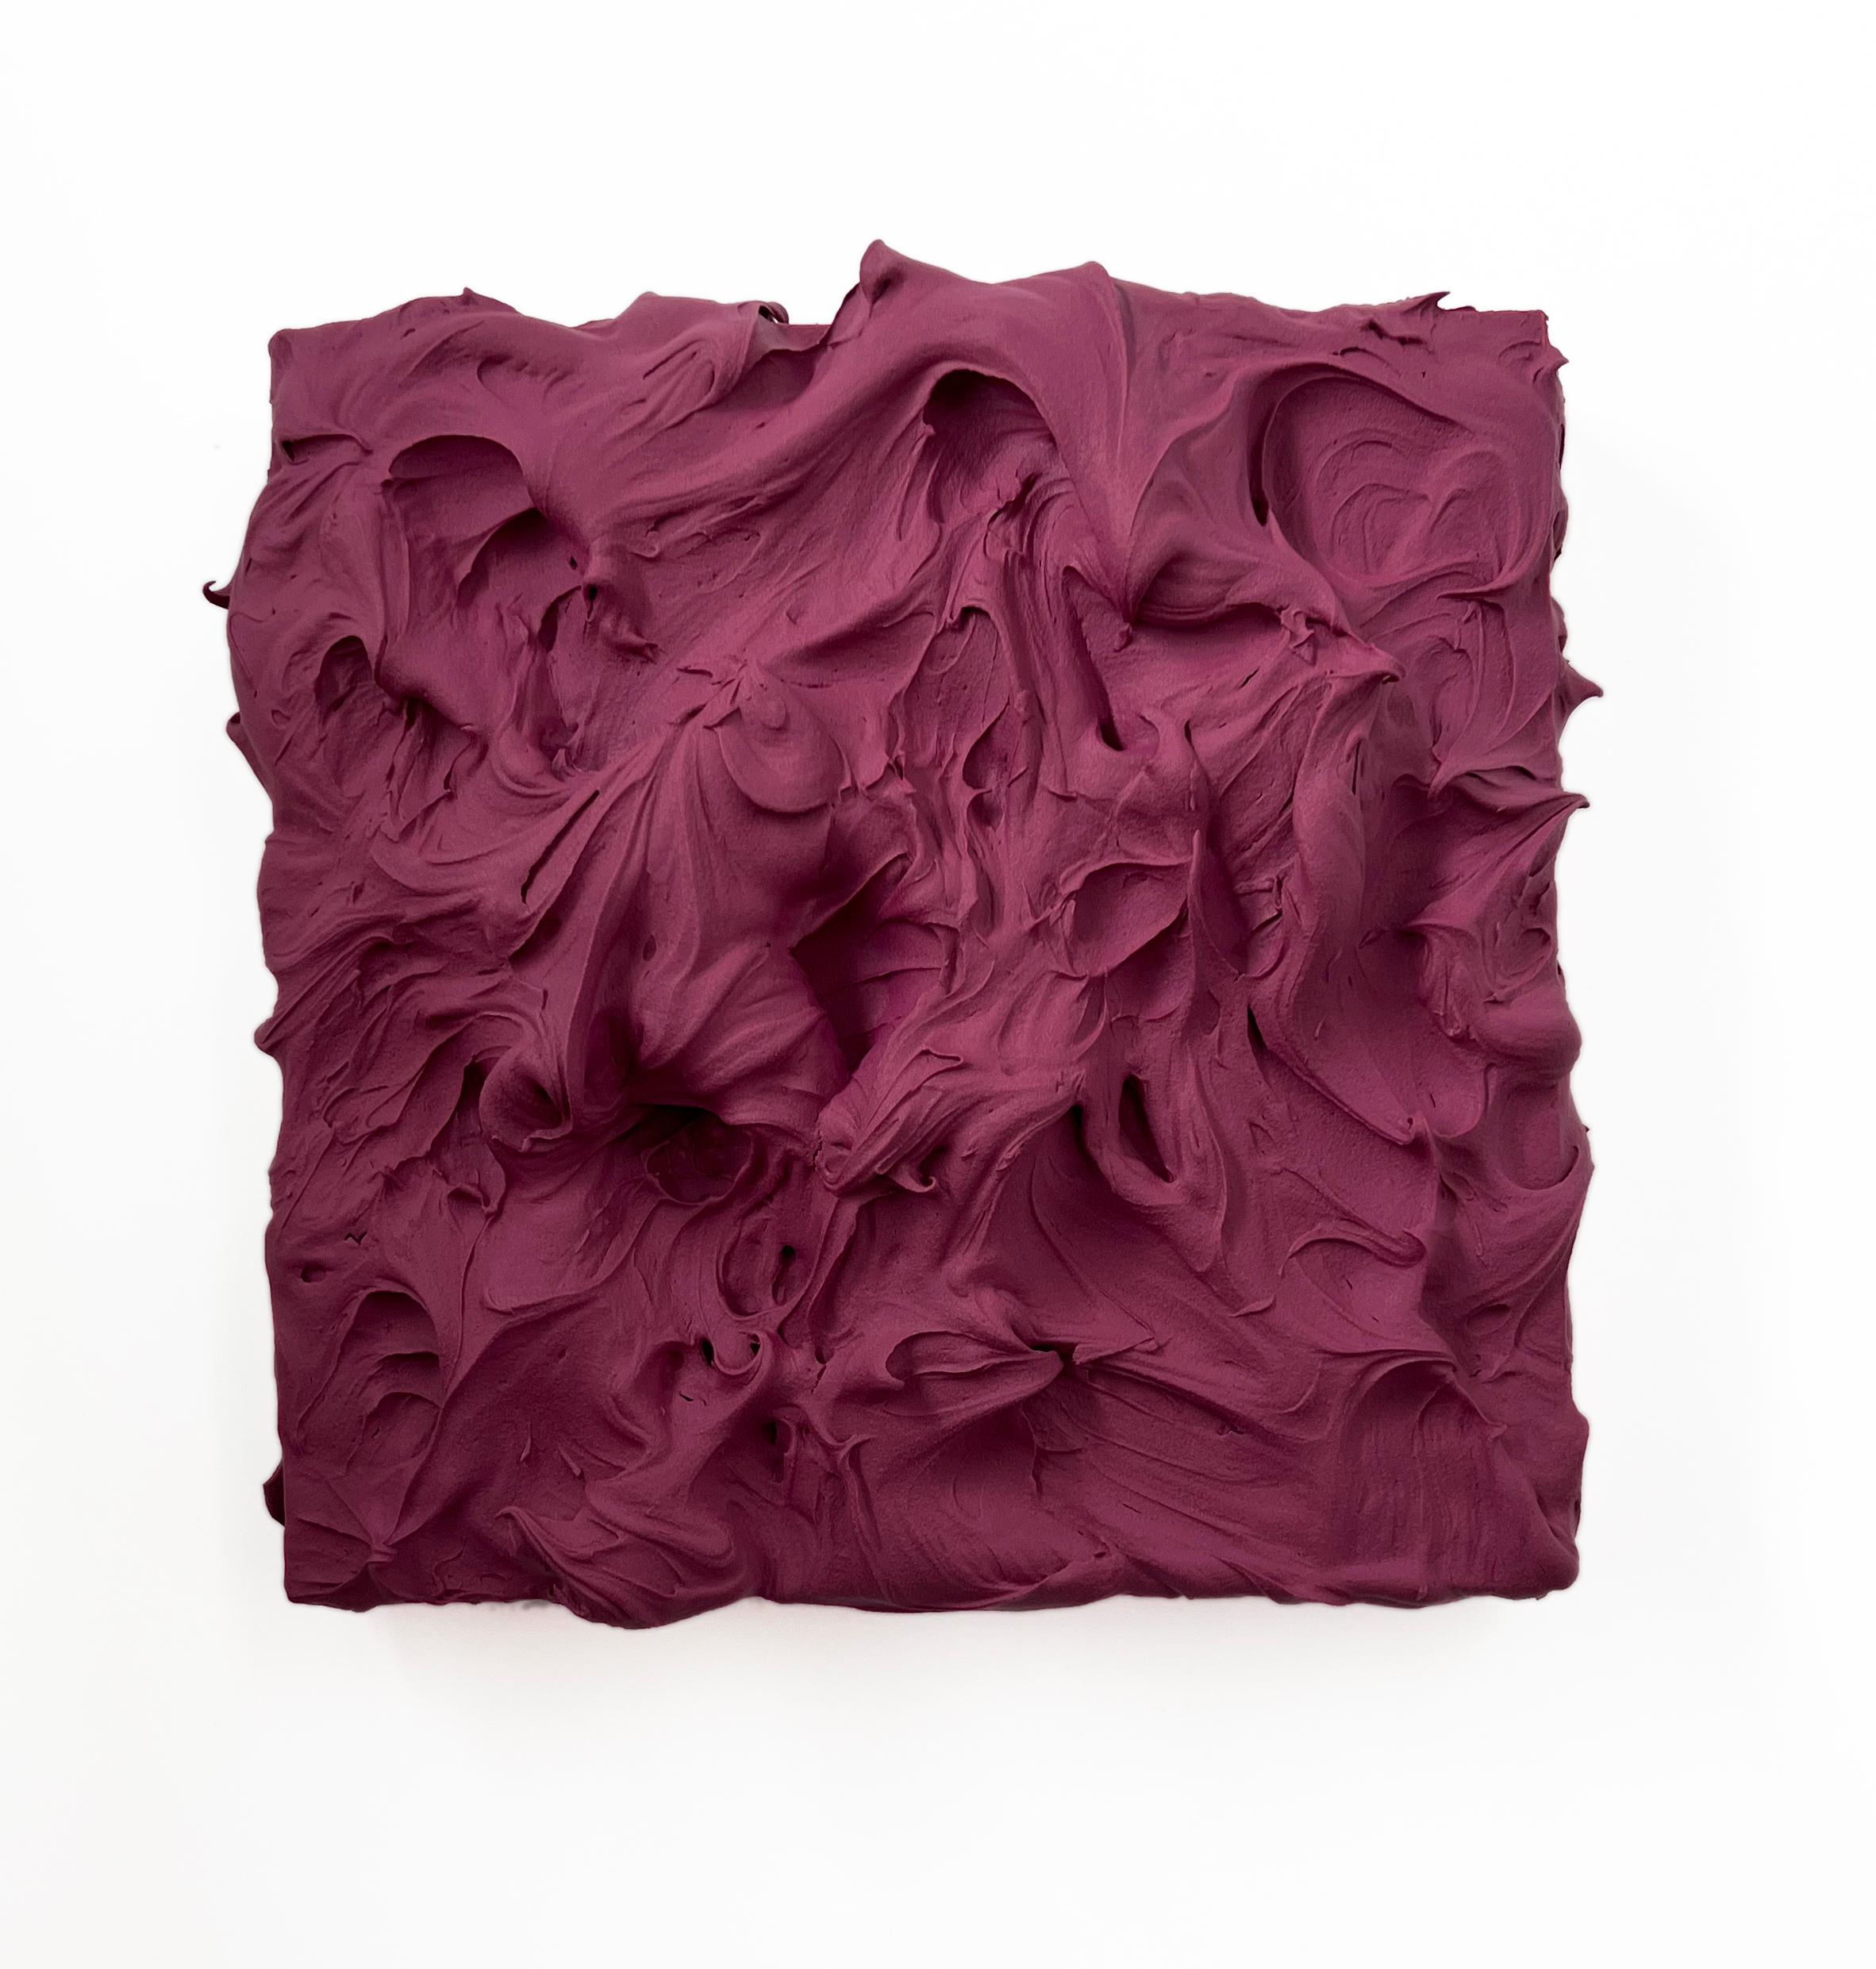 Mauve Excess (peinture épaisse empâtée violette, design carré pop art monochrome)